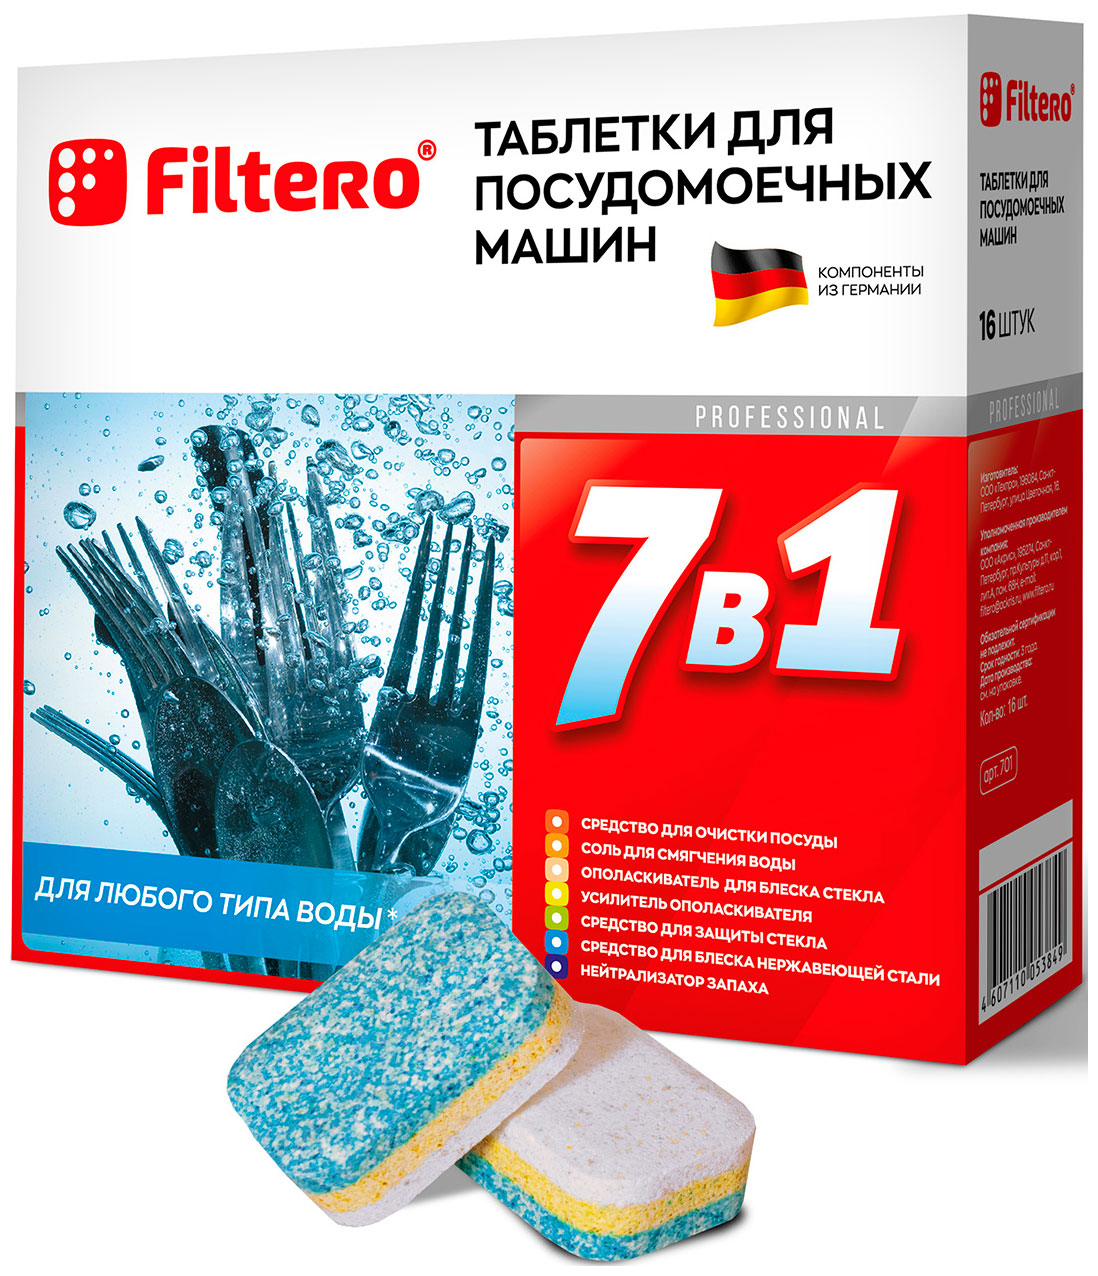 таблетки для посудомоечных машин filtero мегапак 90шт 703 Таблетки для посудомоечных машин Filtero Filtero 7 в 1 таблетки для посудомоечной машины